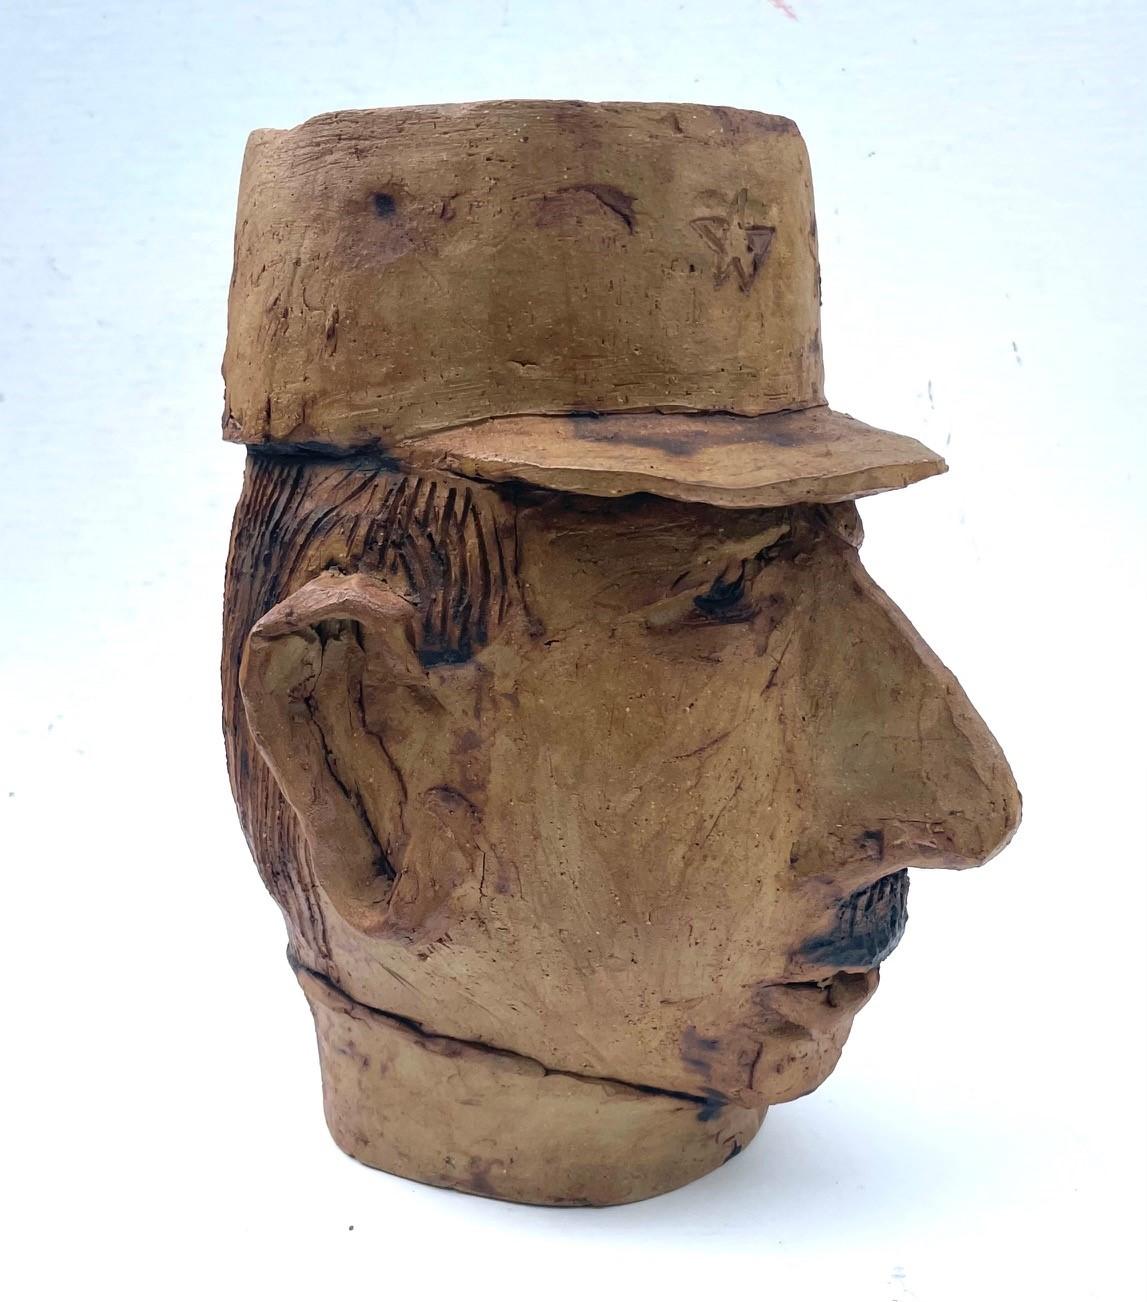 Original Töpferei Skulptur Kopf Pflanzer, General Charles De Gaulle Politische Memorabilia.

Dieser originelle, einzigartige Keramikskulpturenkopf ist gleichzeitig ein Gefäß/Pflanzgefäß. Das einzigartige Volkskunstwerk ist eine Hommage an den